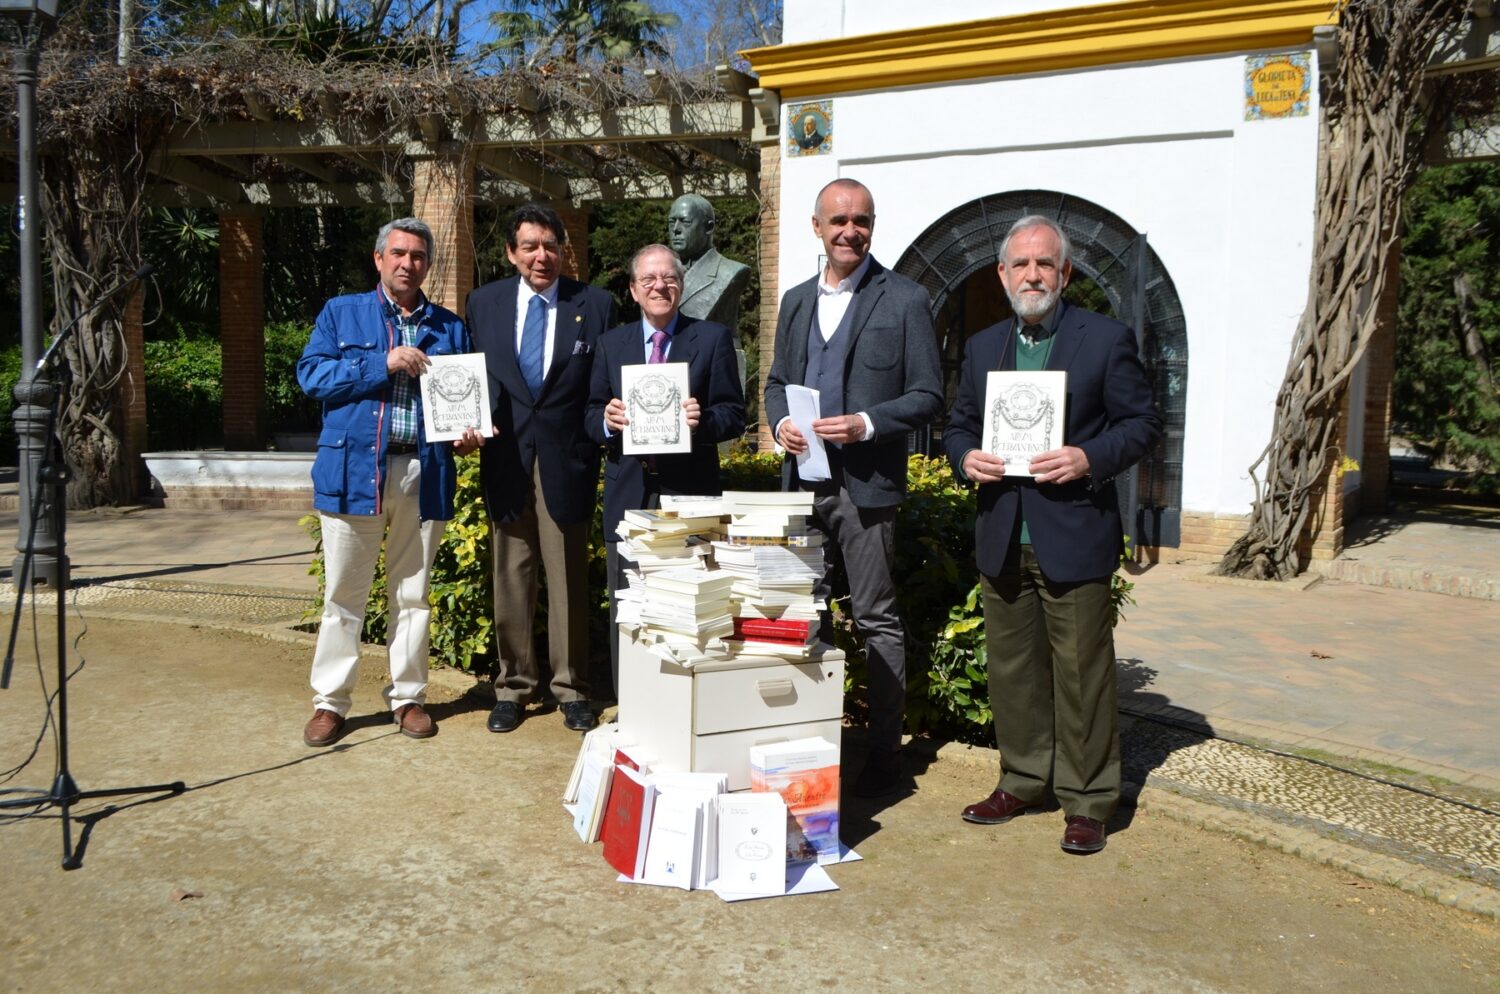 La donación de libros al Parque tuvo lugar en la glorieta Luca de Teba